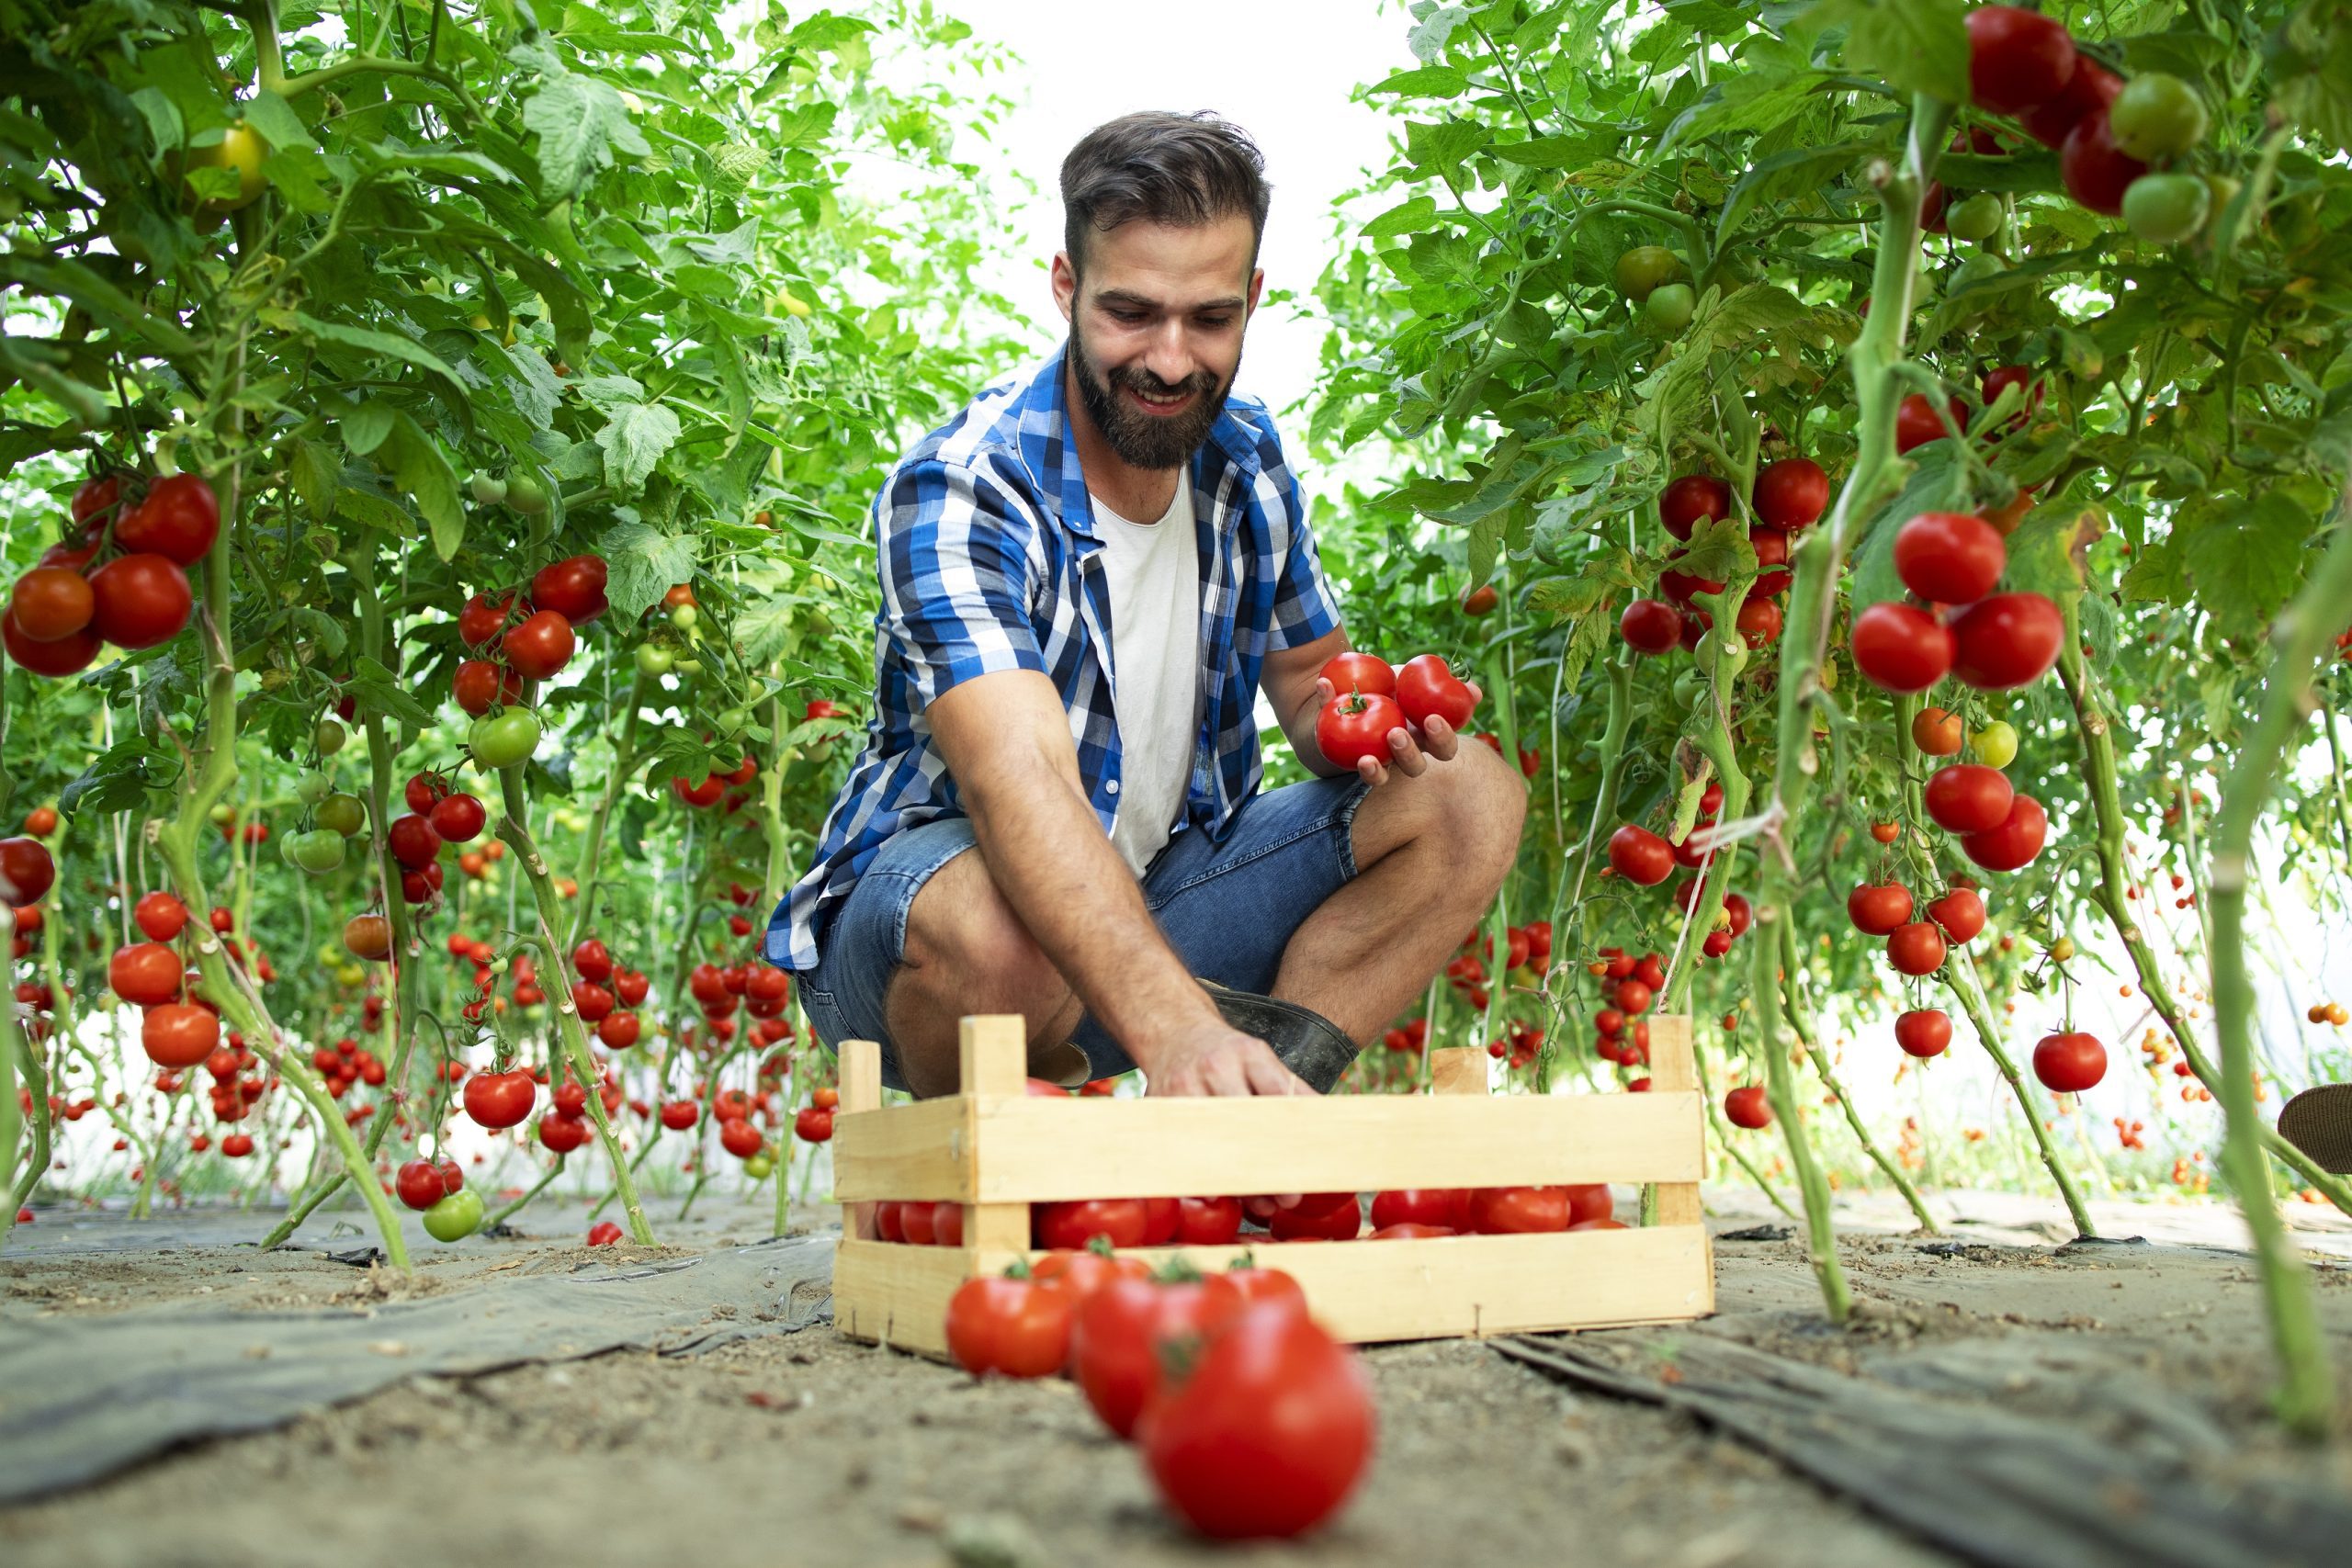 El tomate es uno de los símbolos alimentarios más relevantes que aparece en los sueños